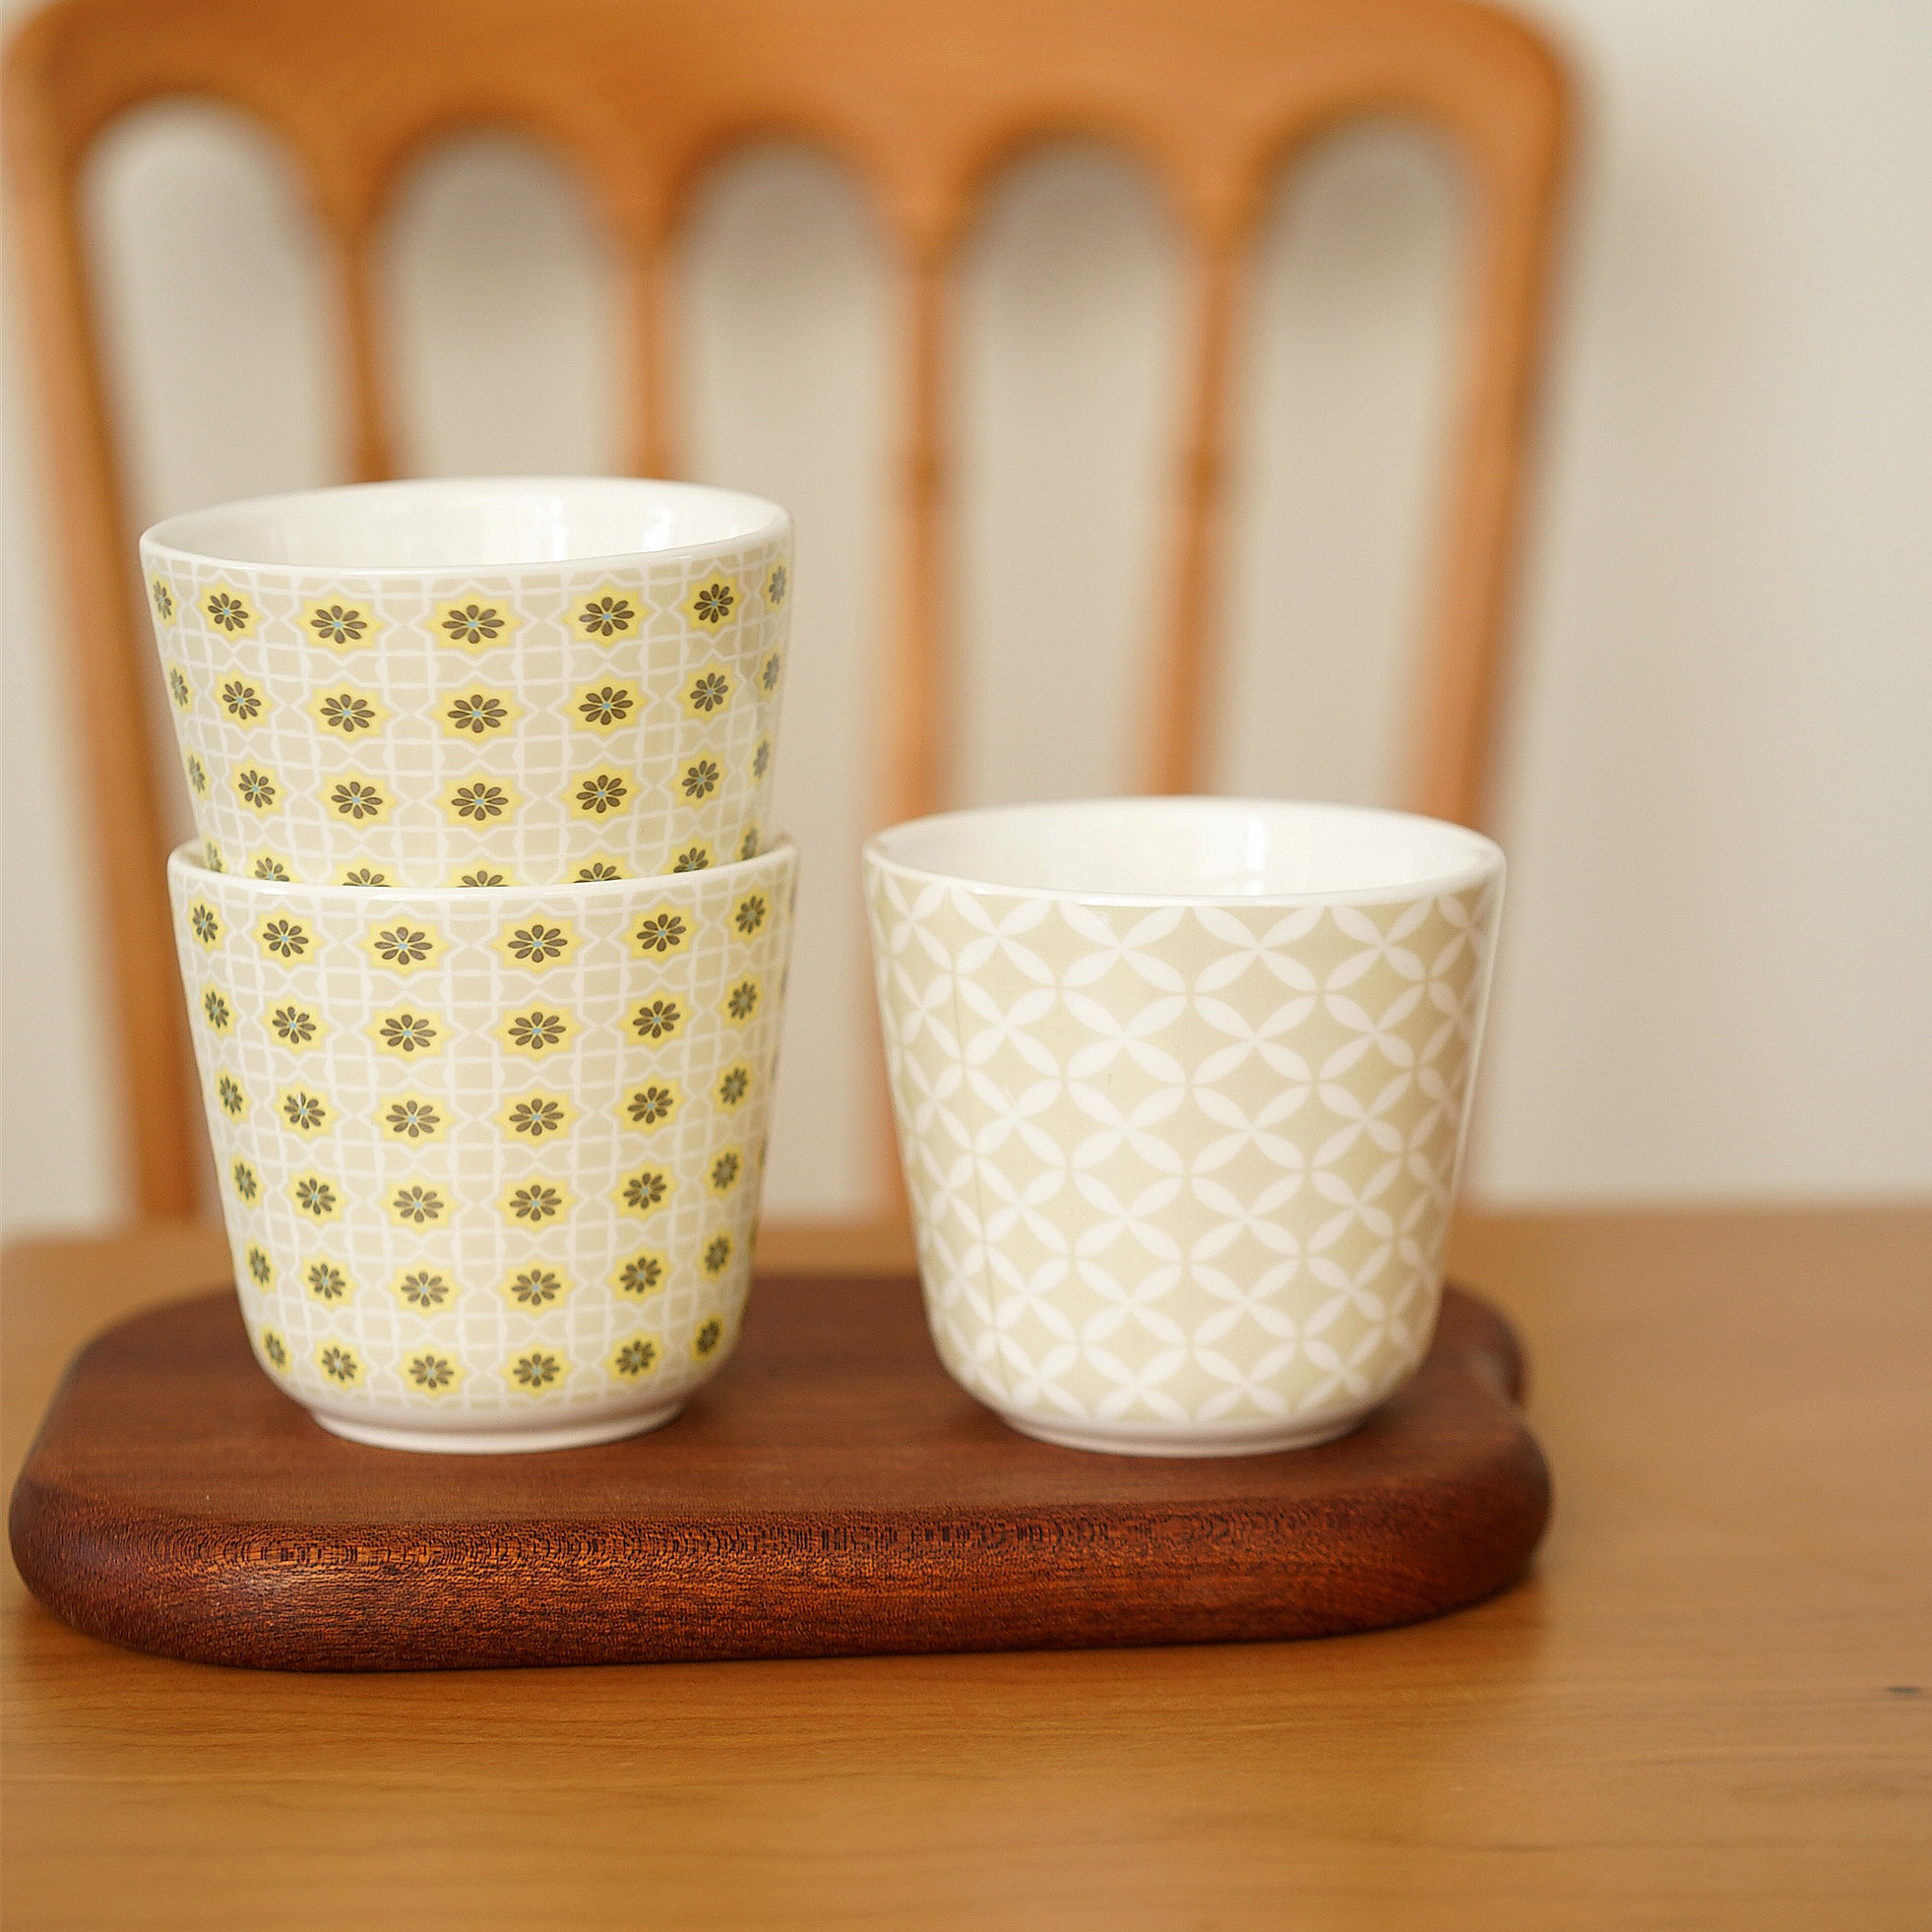 出日本素雅陶瓷手握杯双层隔热茶杯日式 随手杯水杯咖啡杯釉下彩